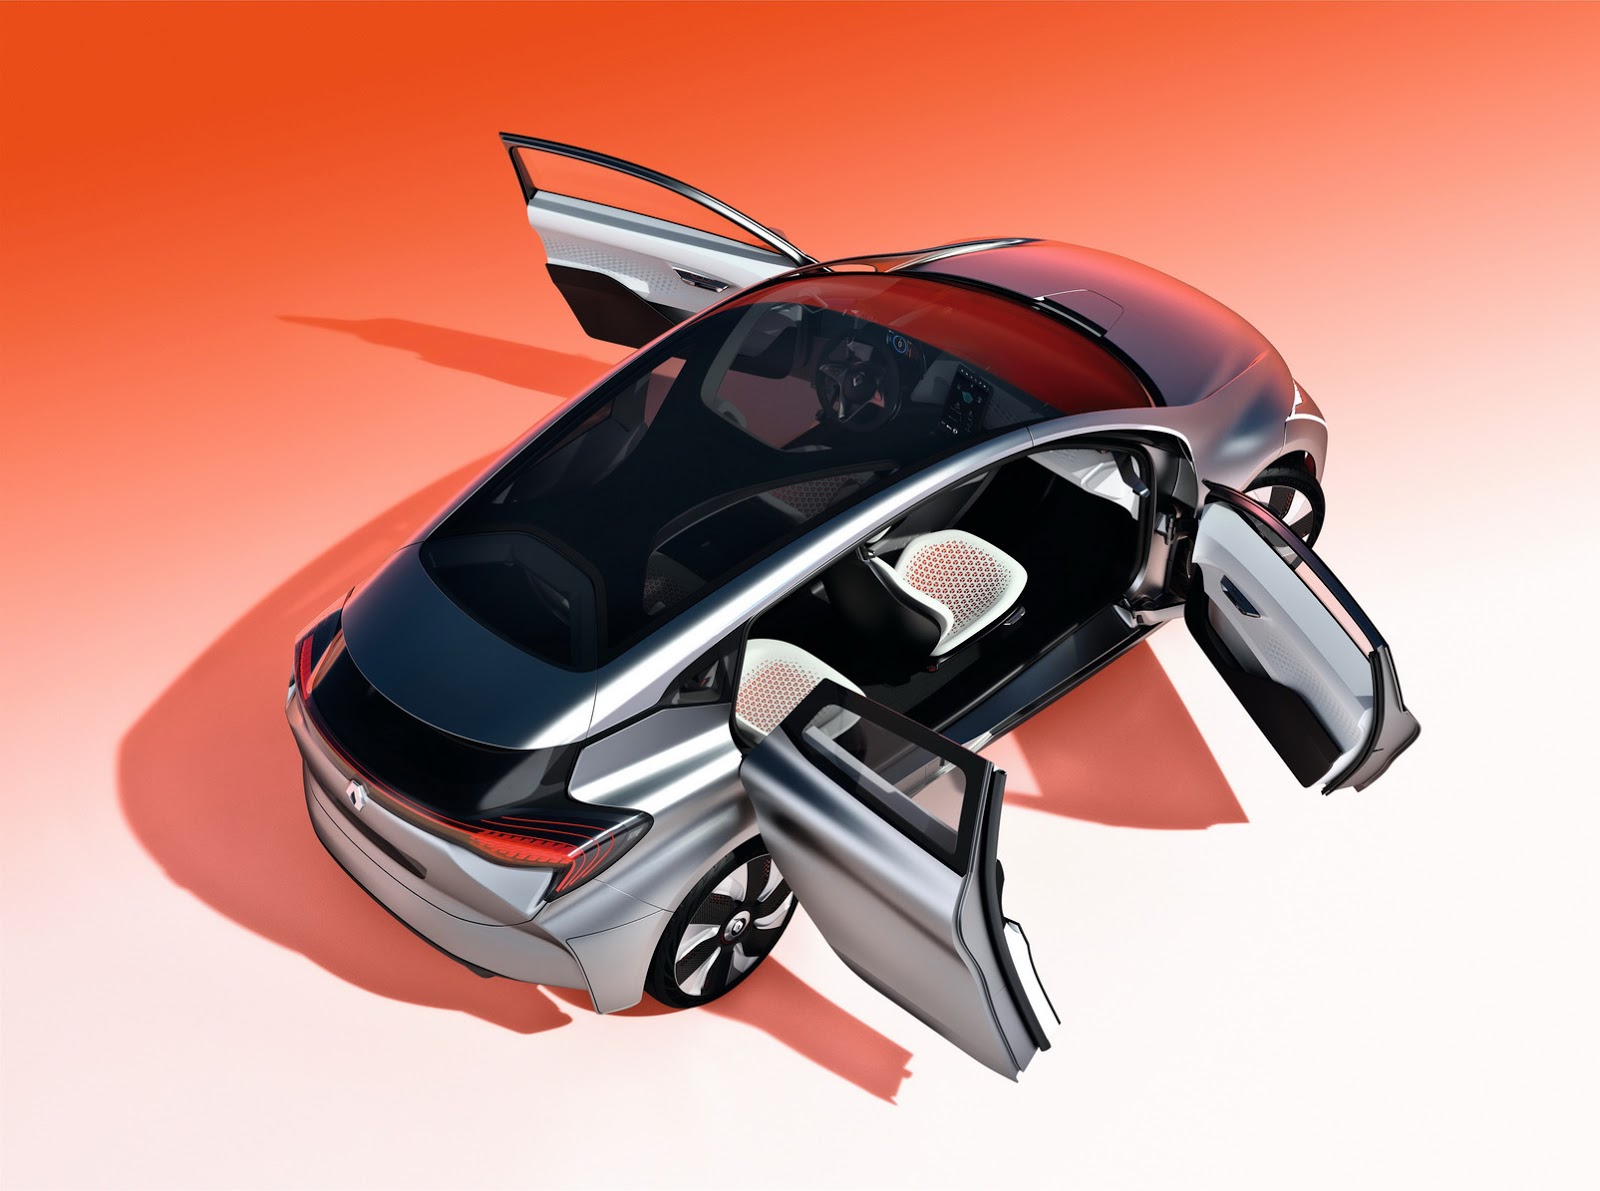 2015-Peugeot-508-17[2].jpg